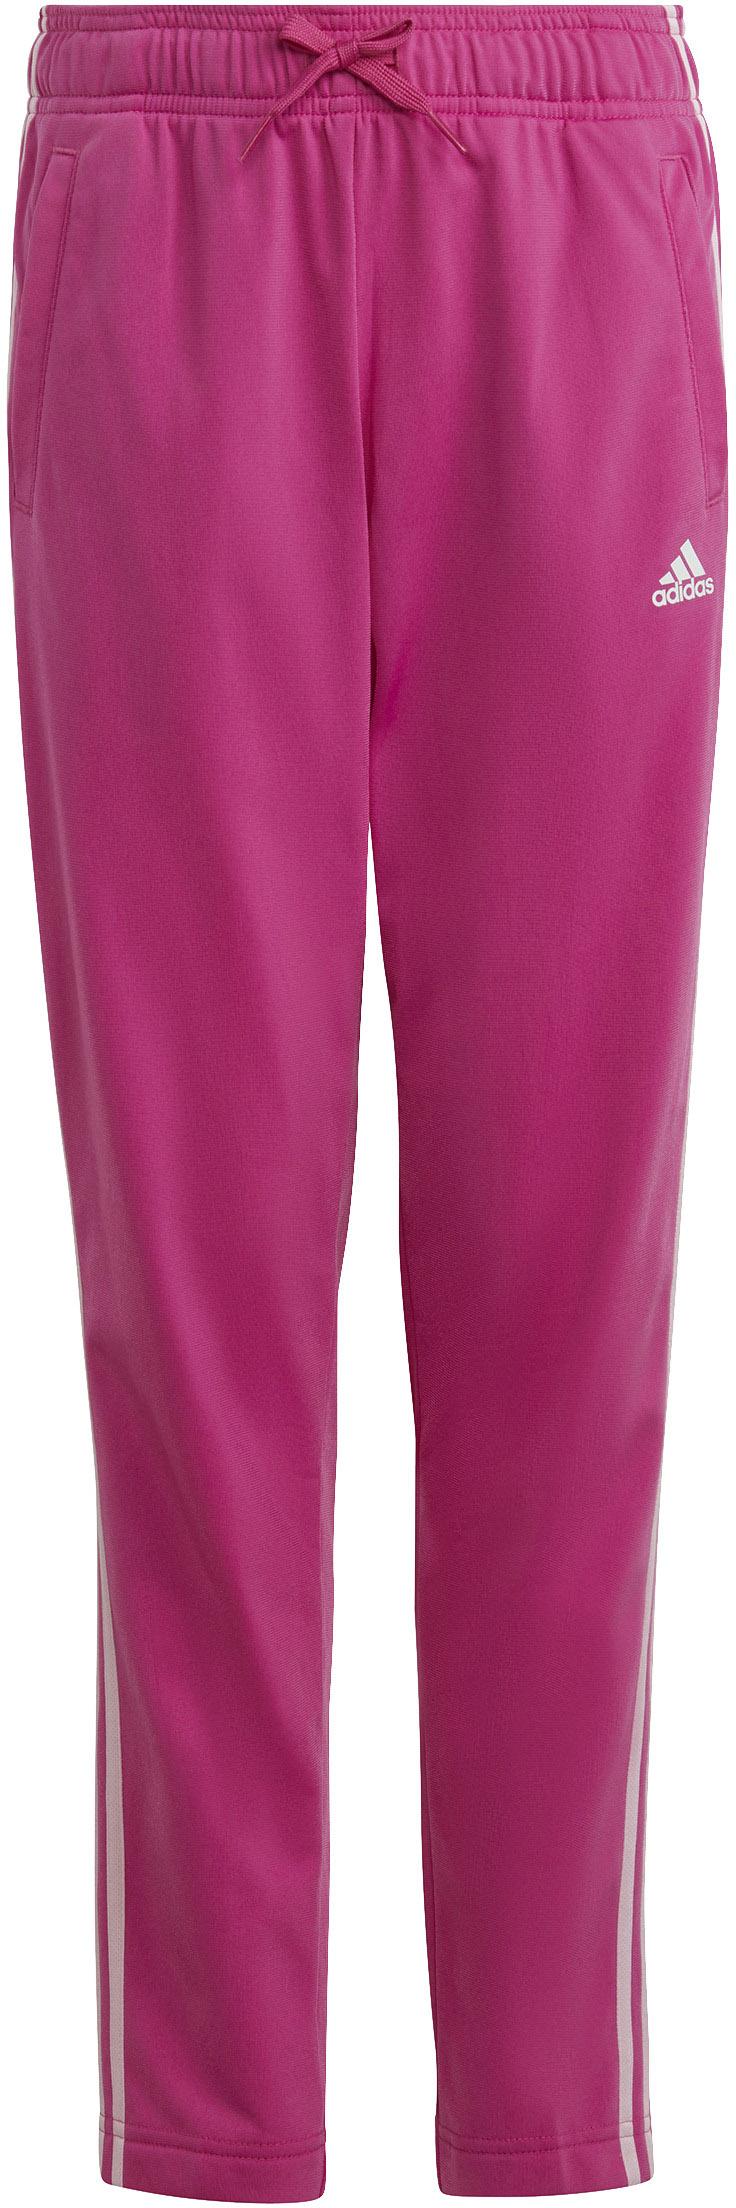 Adidas Trainingsanzug Mädchen clear pink-semi von lucid fuchsia-white kaufen SportScheck im Online Shop